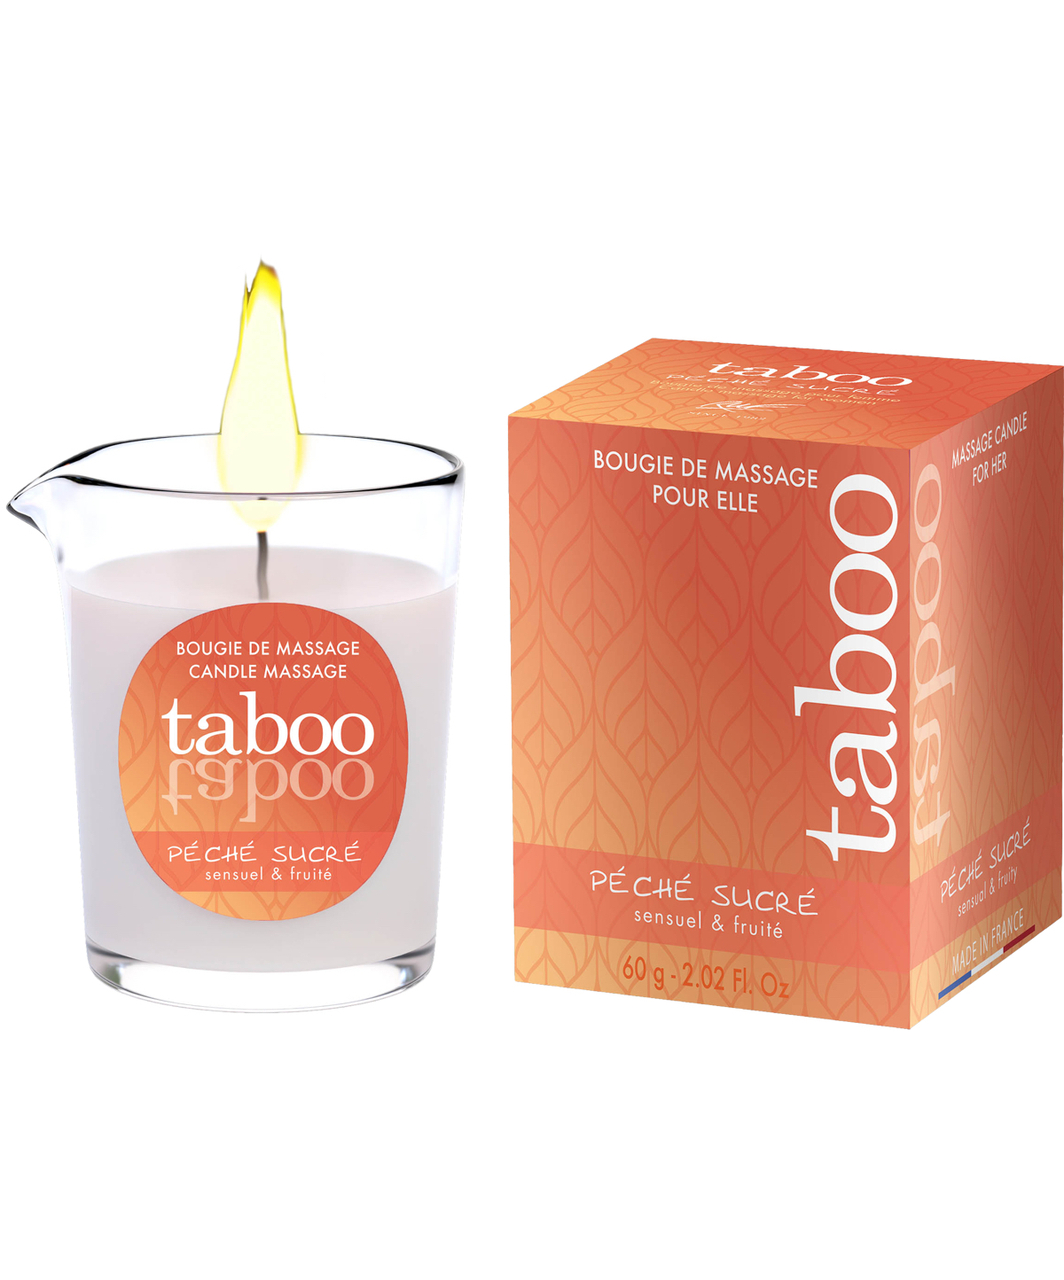 Taboo Péché Sucré Massage Candle (60 g)